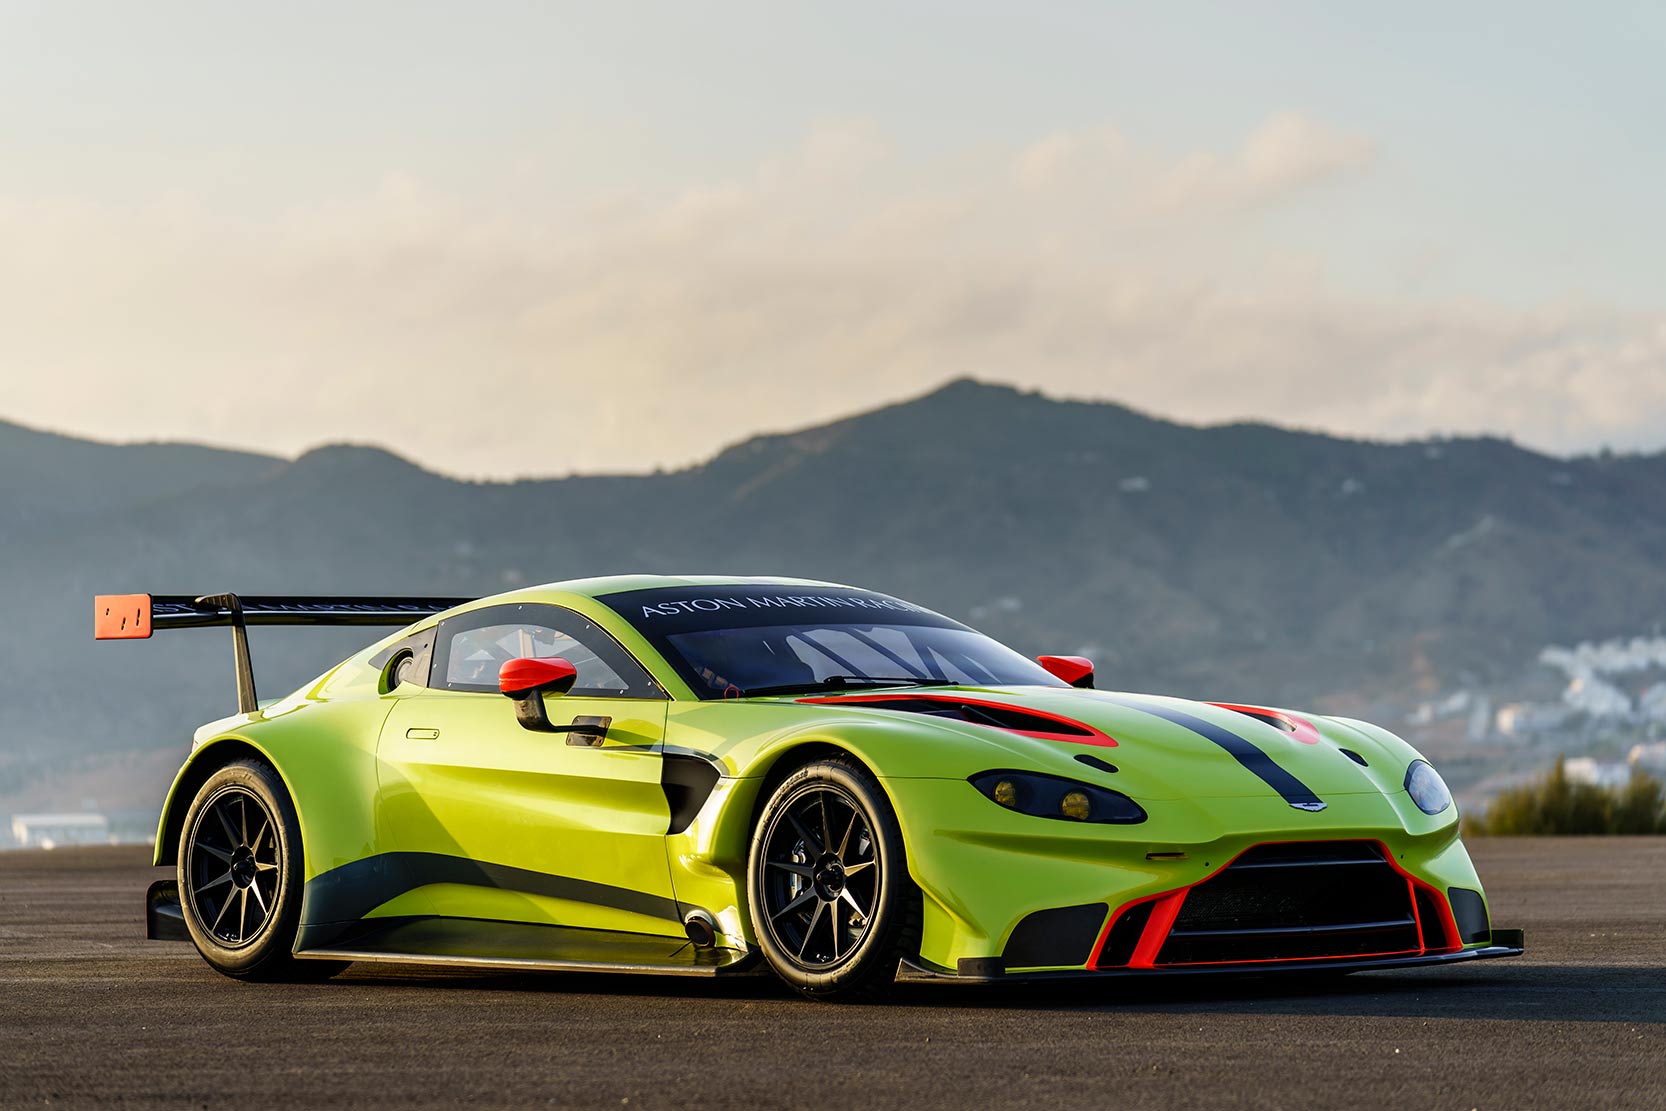 Image principale de l'actu: Aston martin vantage gte pour le championnat du monde d endurance 